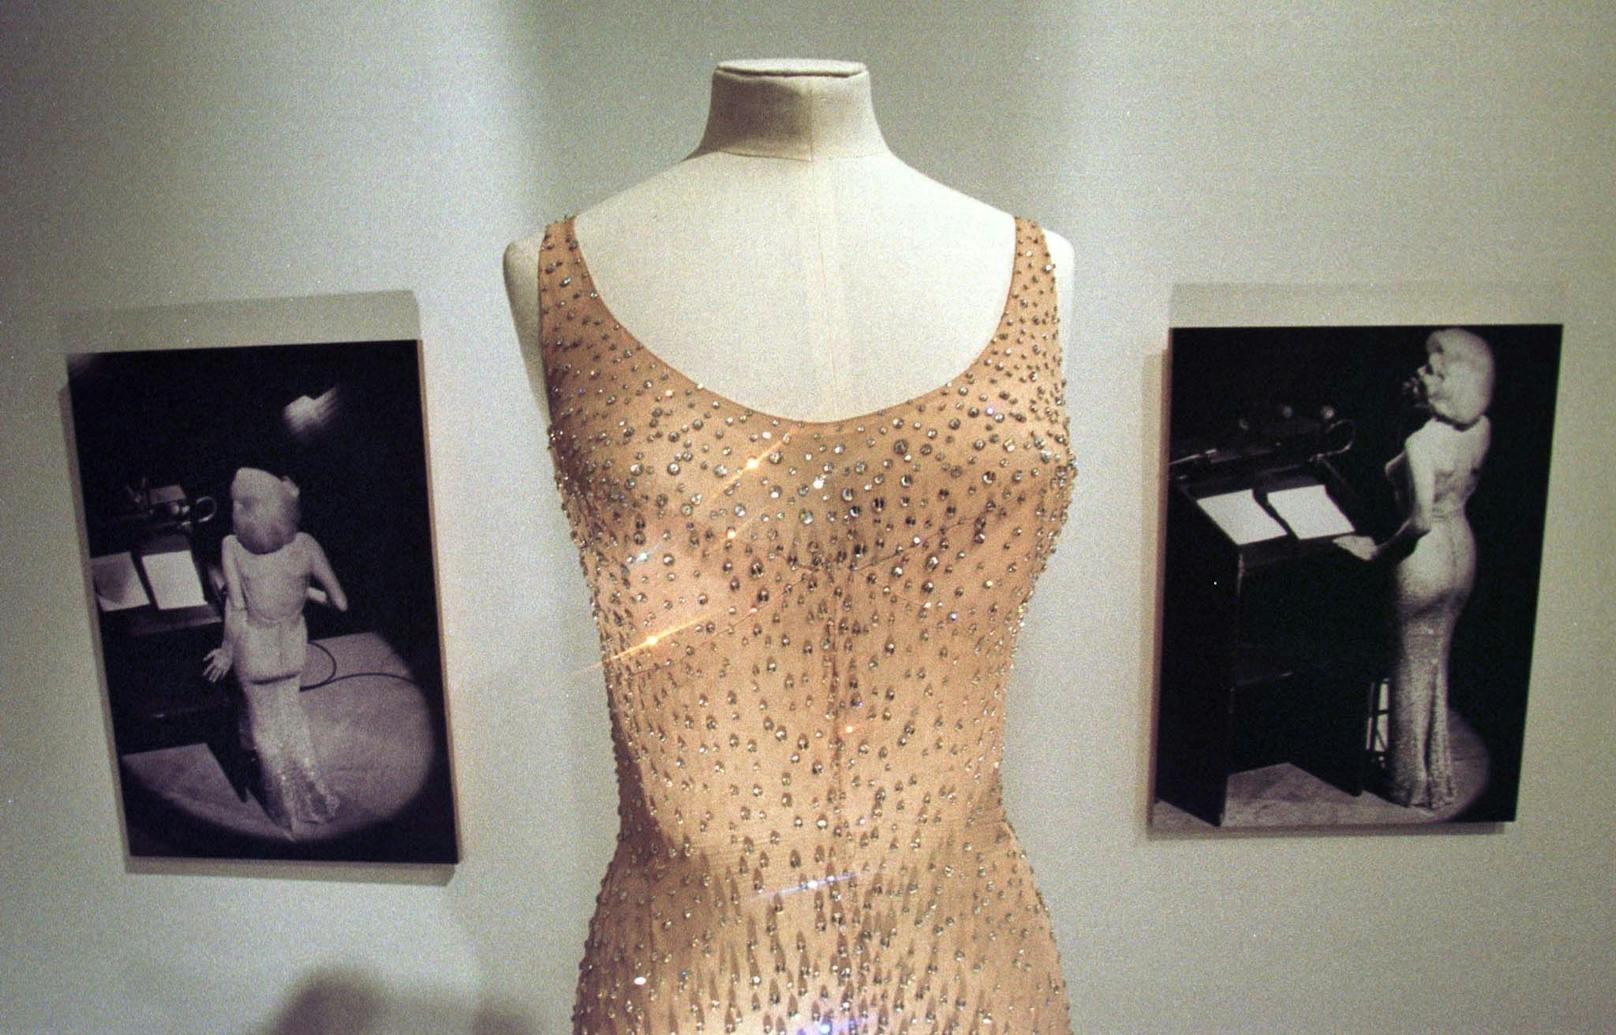 Das hautfarbene Kleid wurde beim berühmten Geburtstagsfest von President John F. Kennedy 1962 getragen. Marylin Monroe musste sogar in das Kleid genäht werden, damit es hauteng sitzen konnte. Zu einer Zeit, als es noch keine Stretch-Materialien gab, ein besonderes Unterfangen. Bereits damals war dieses Couture-Stück 12.000 US-Dollar wert.